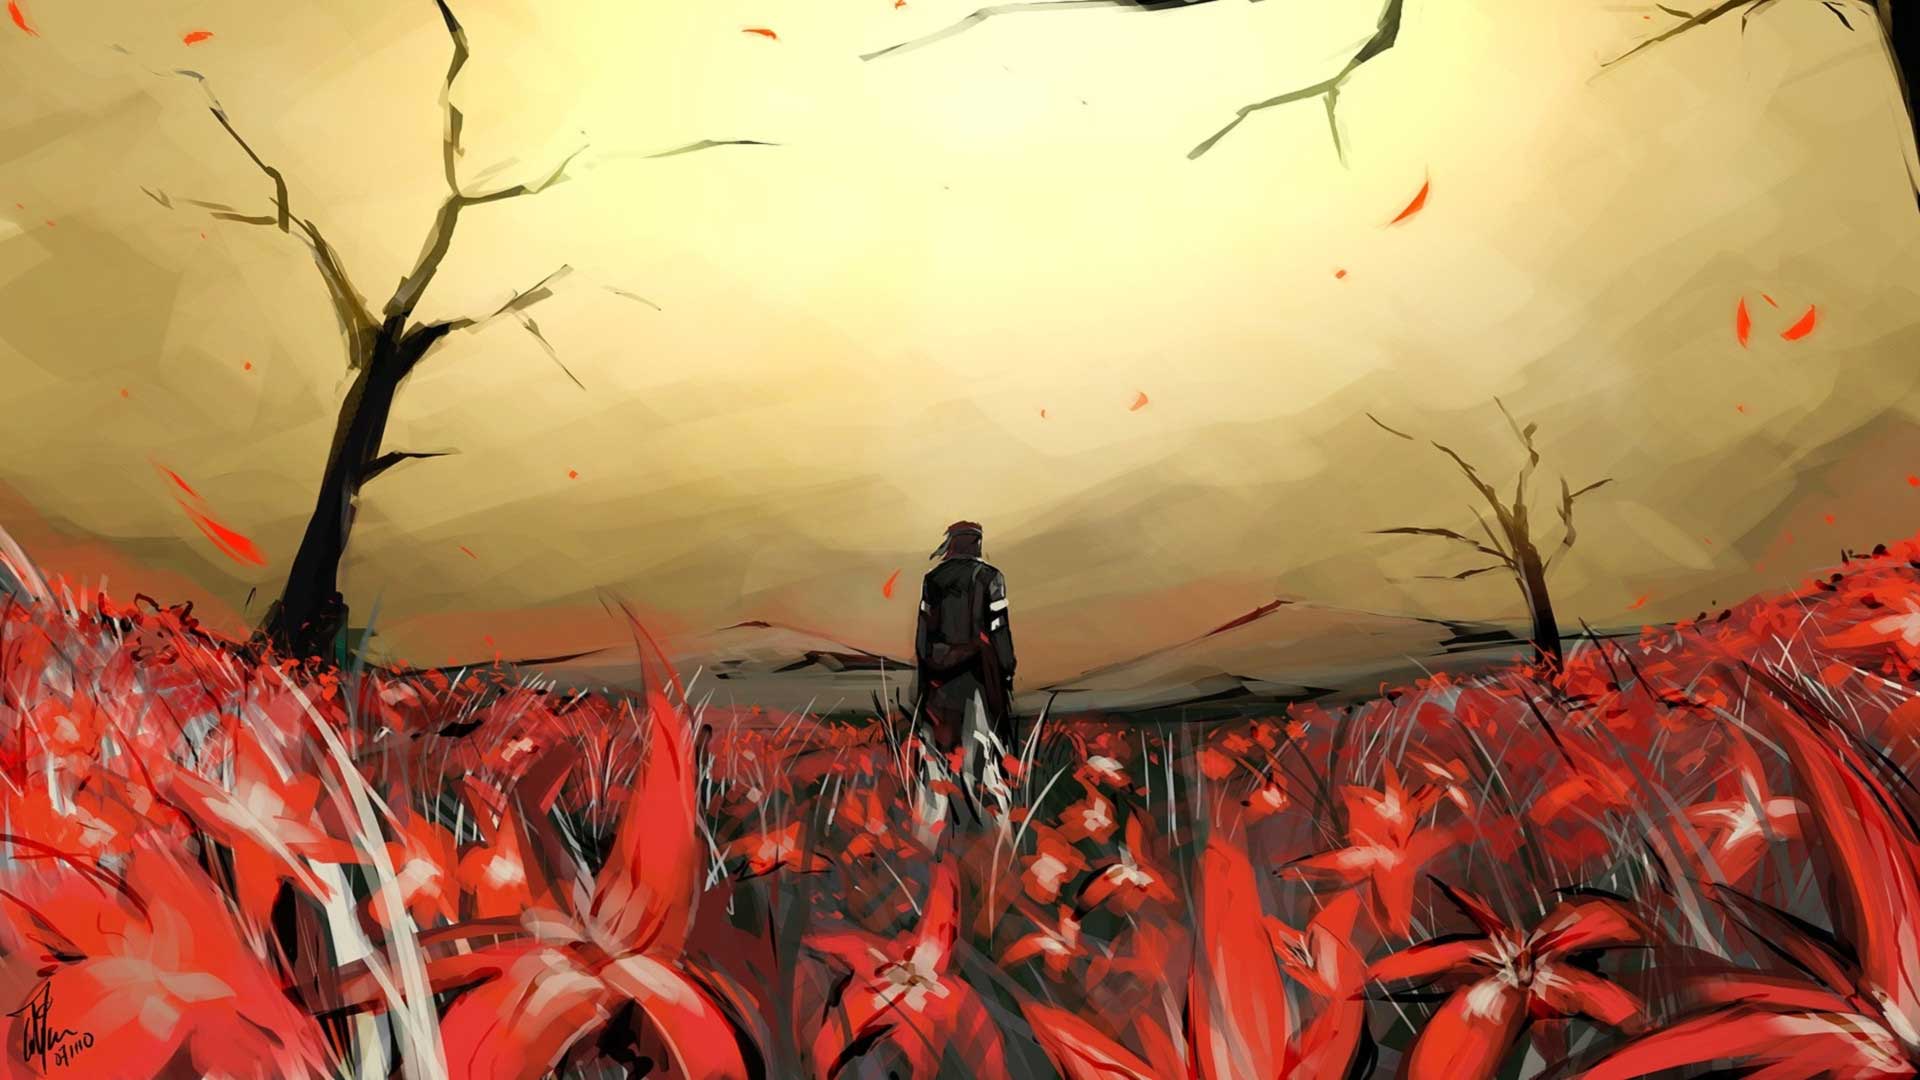 اسنیک در میان گل های قرمز در تصویر هنری بازی متال گیر سالید 3 هیدئو کوجیما